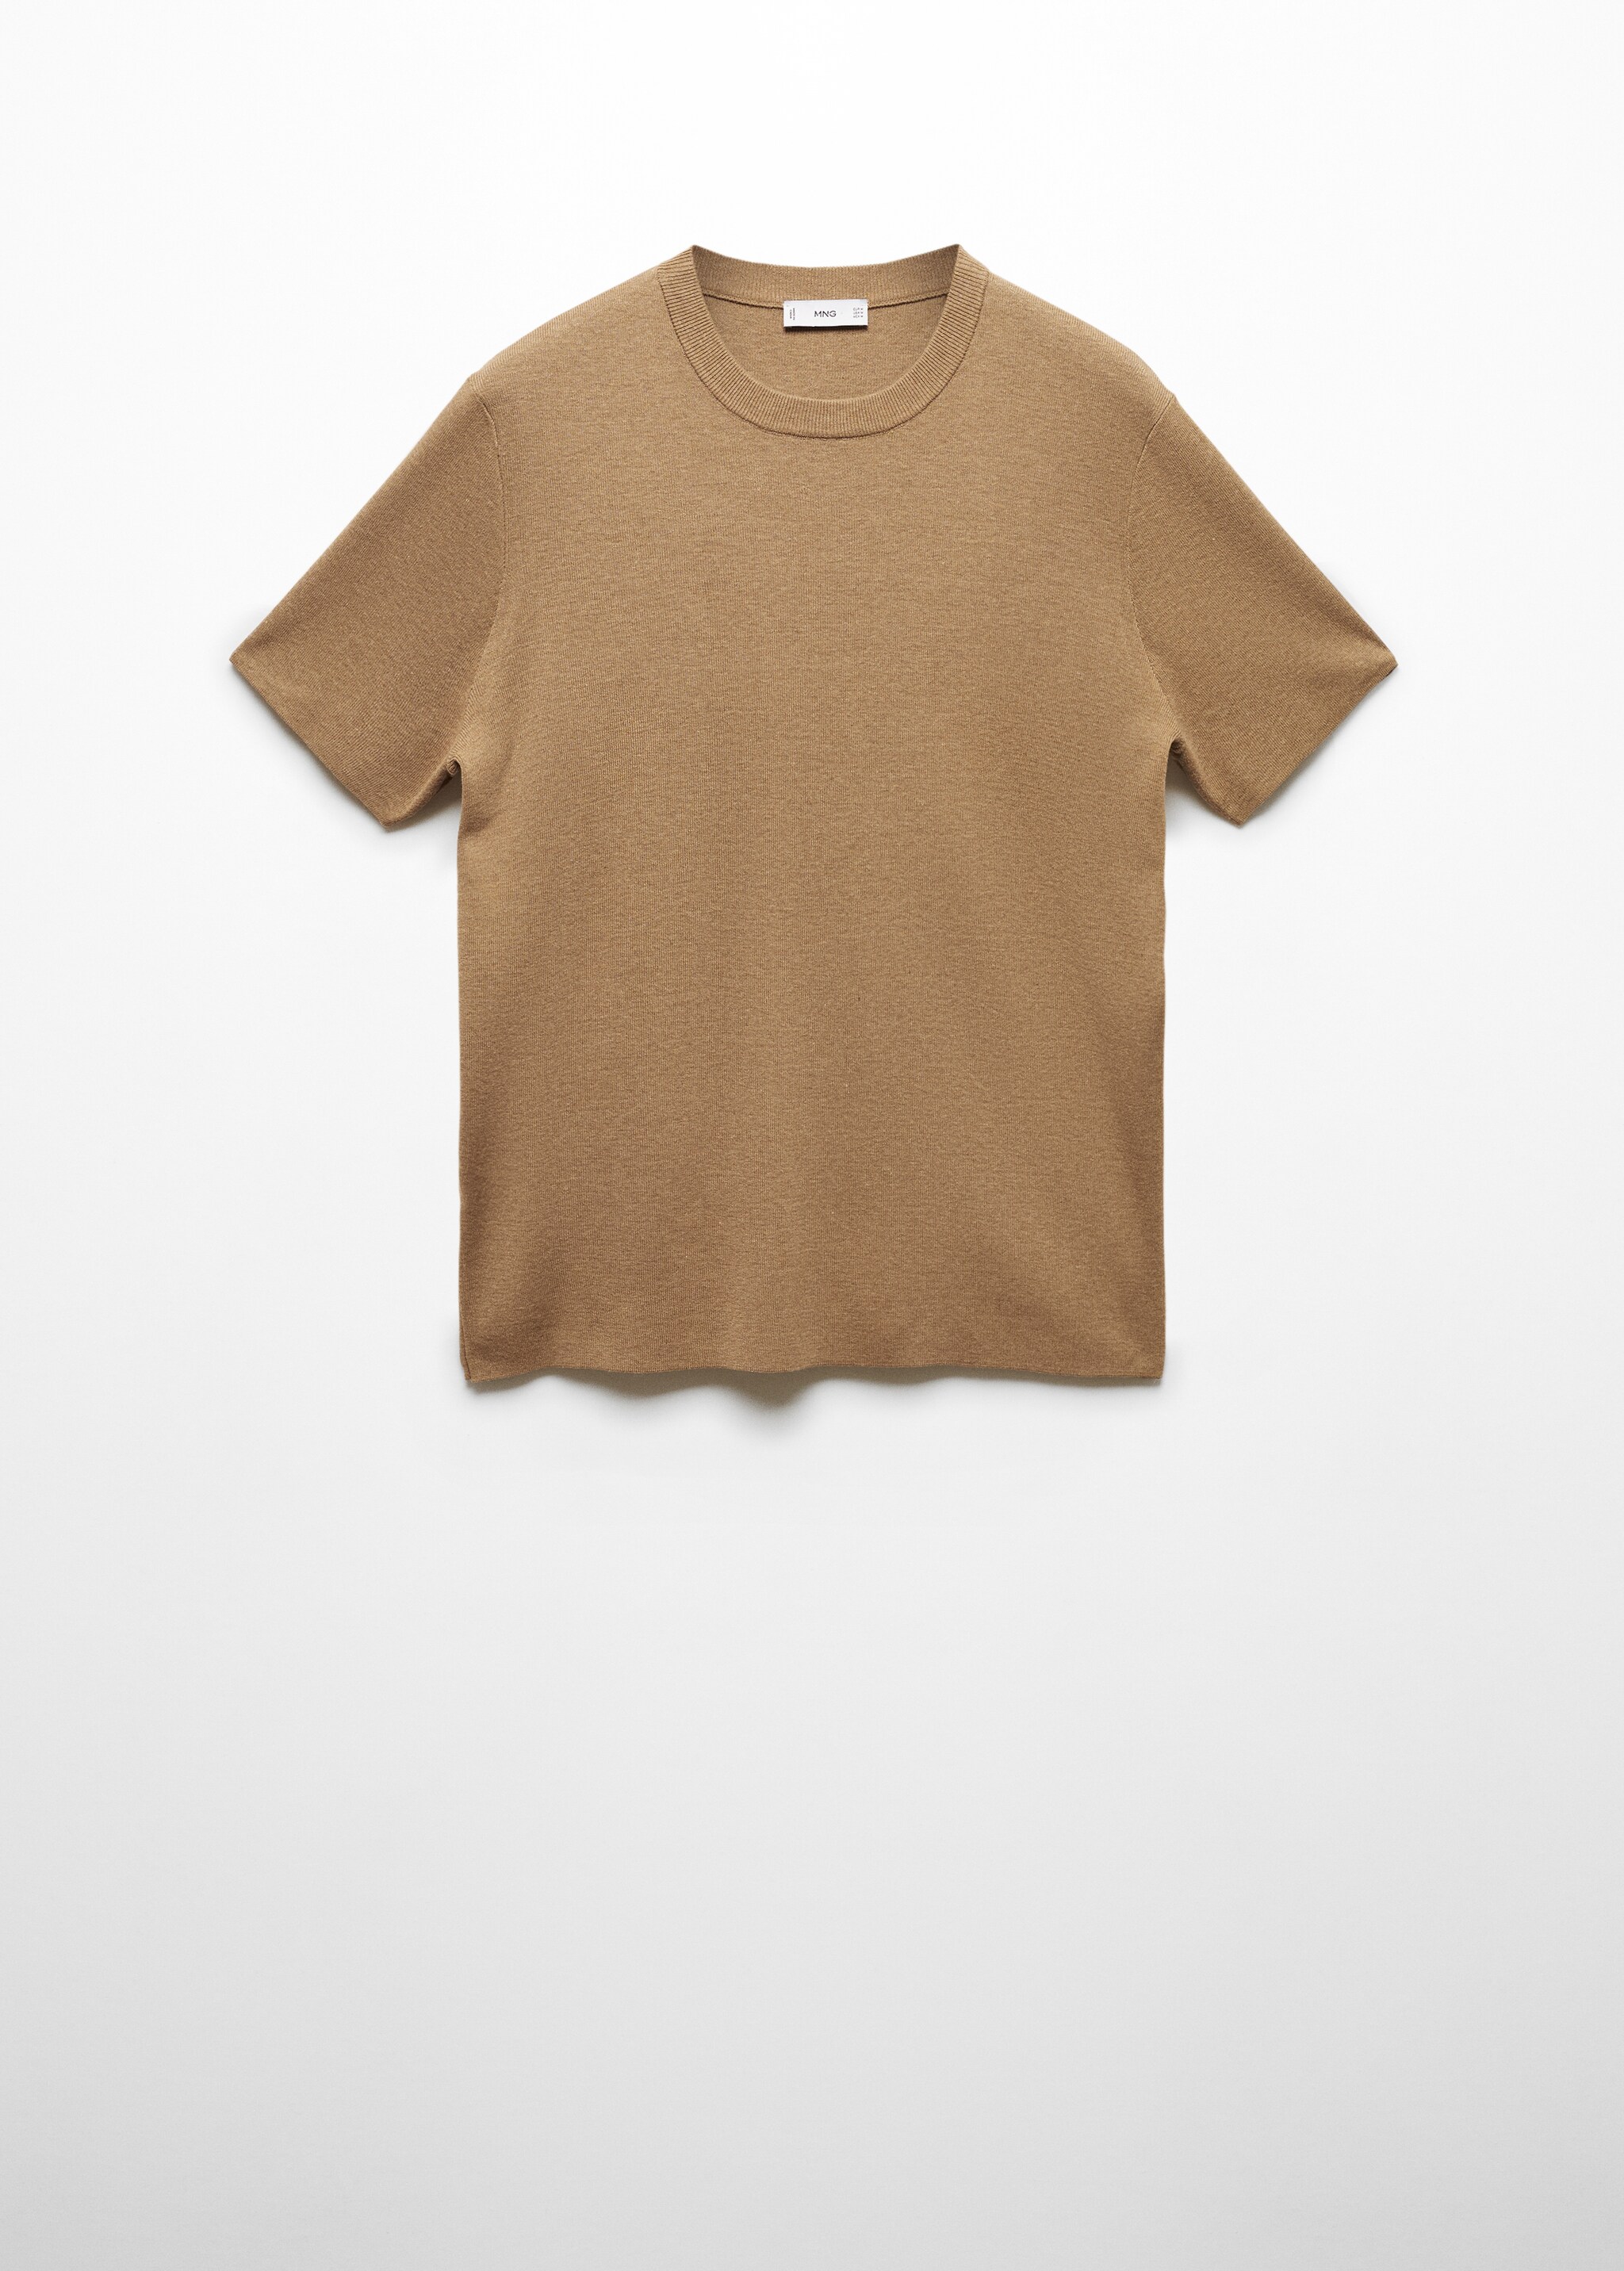 Camiseta básica mezcla algodón - Artículo sin modelo